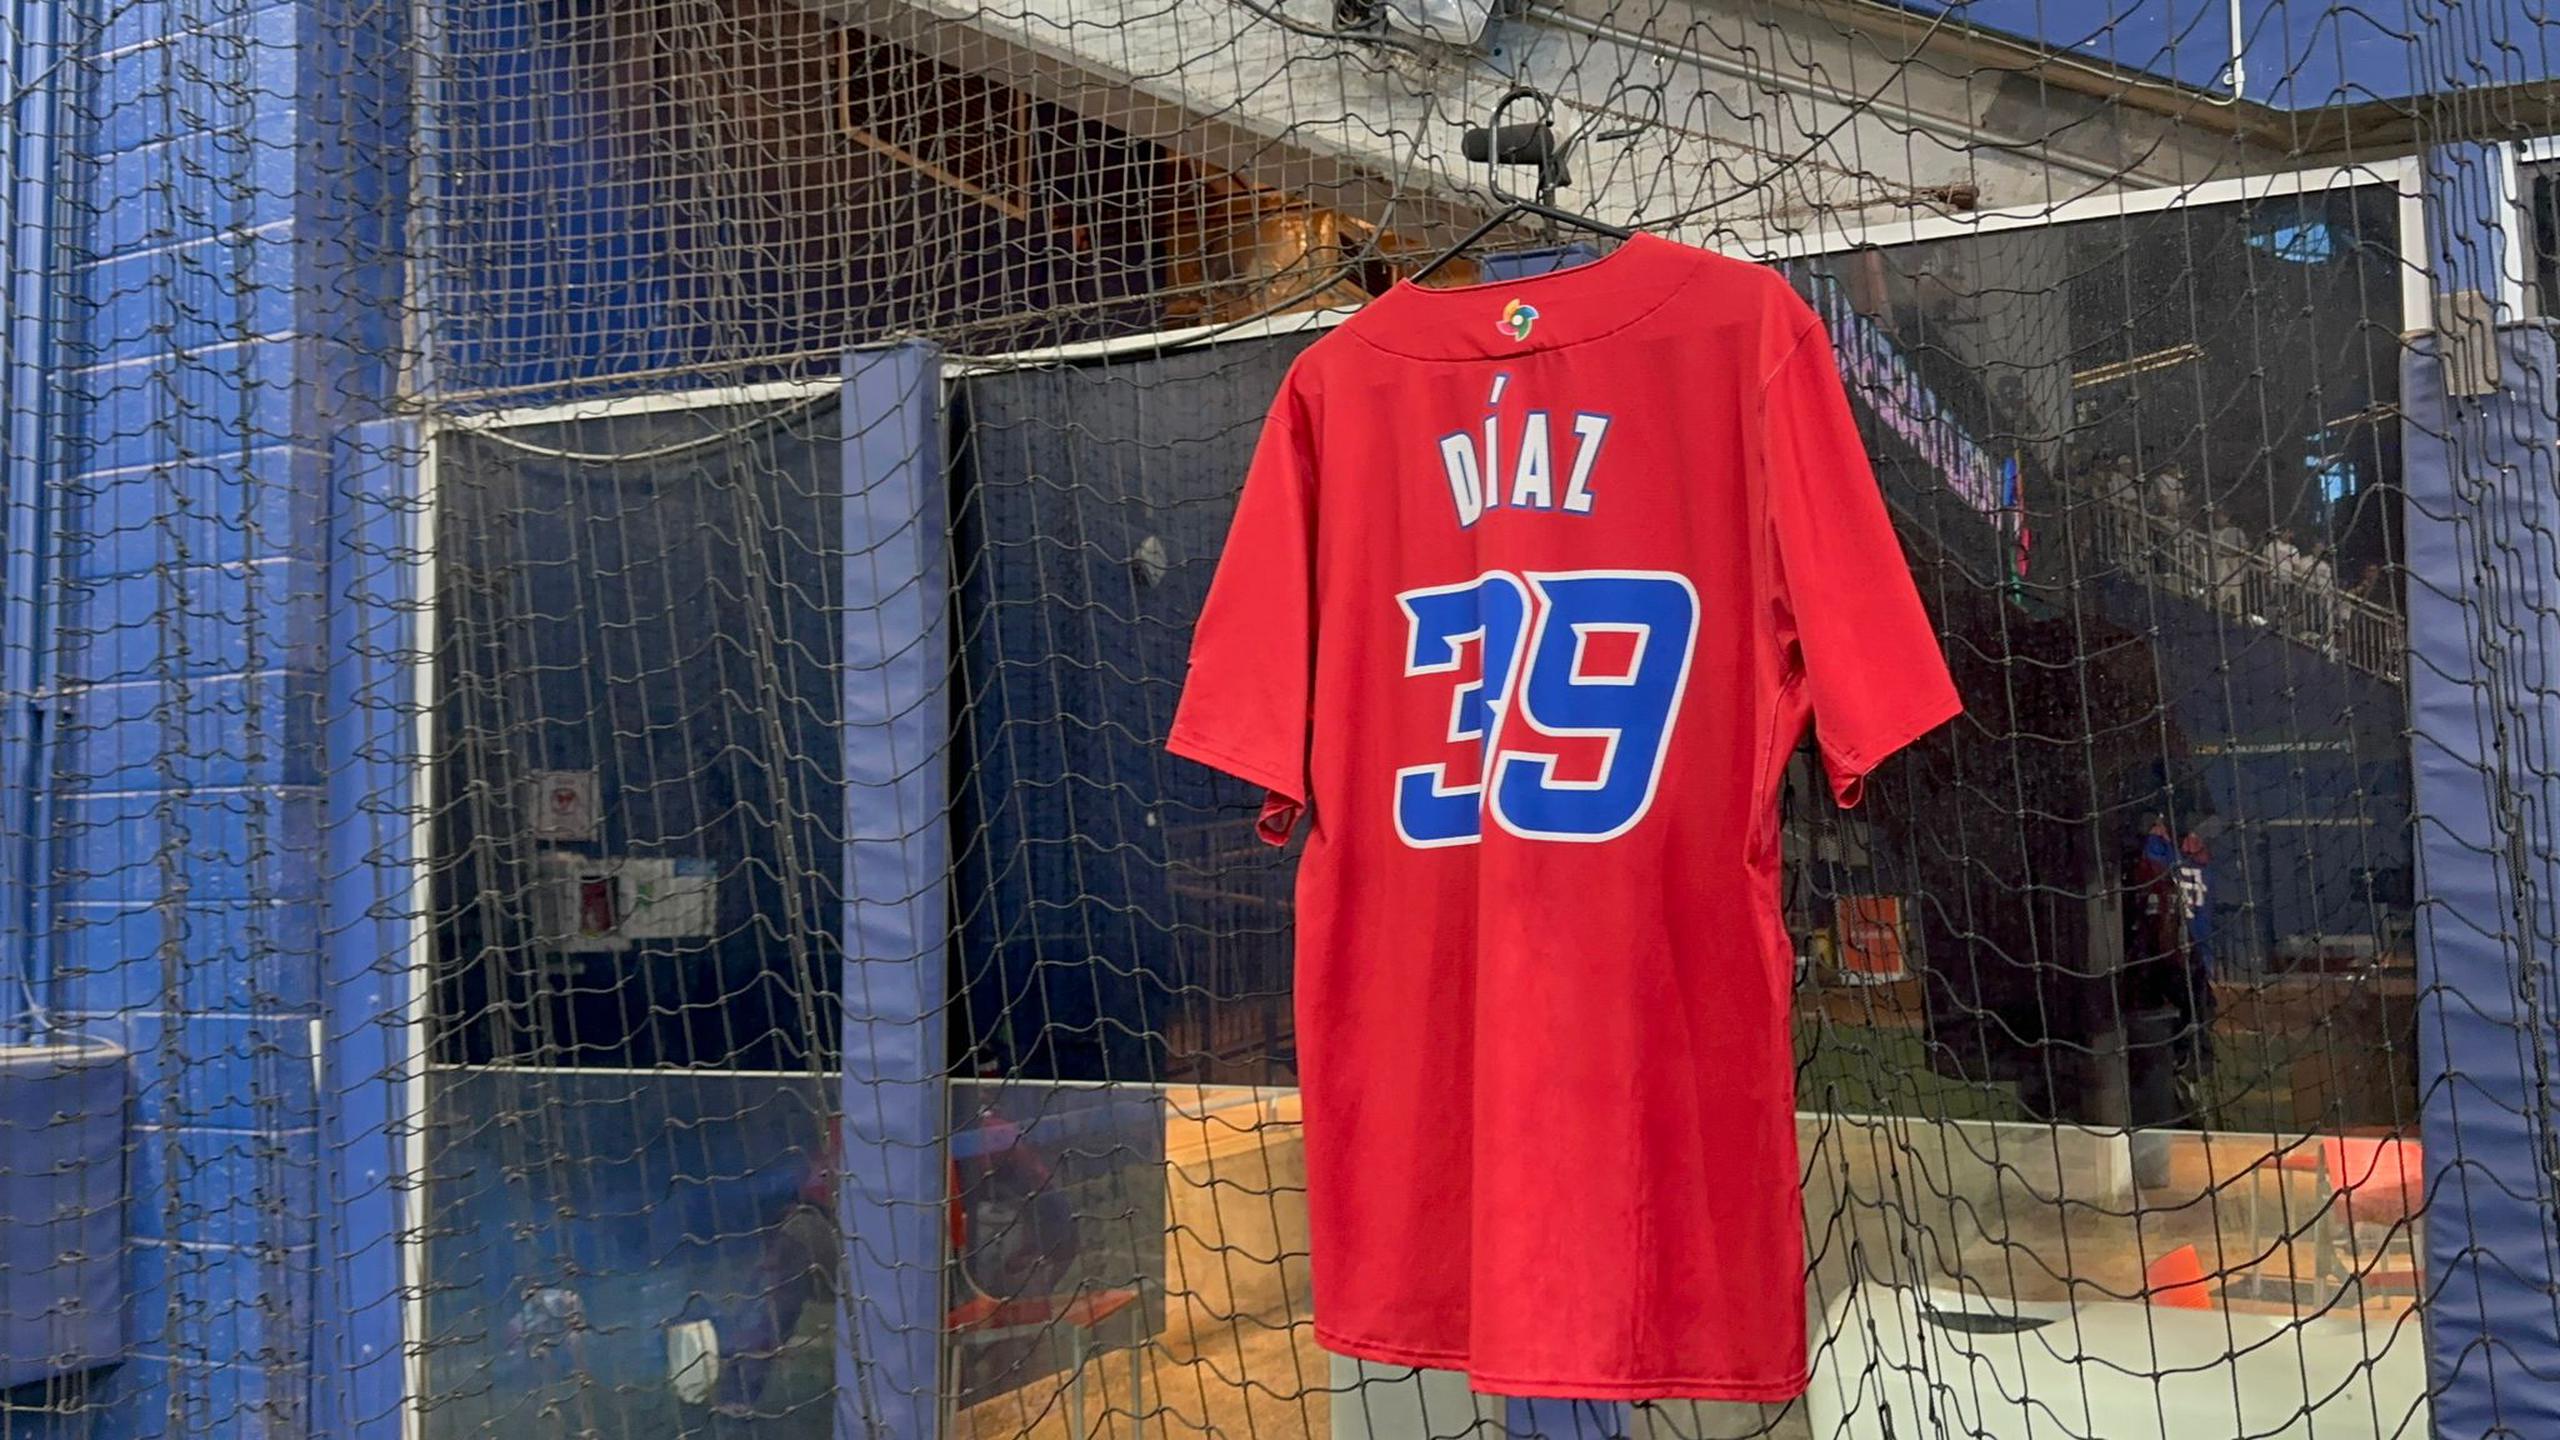 La camiseta de Edwin Díaz couelga en el bullpen de Puerto Rico. otra franela del estelar taponero acompaña al equipo en el dugout.